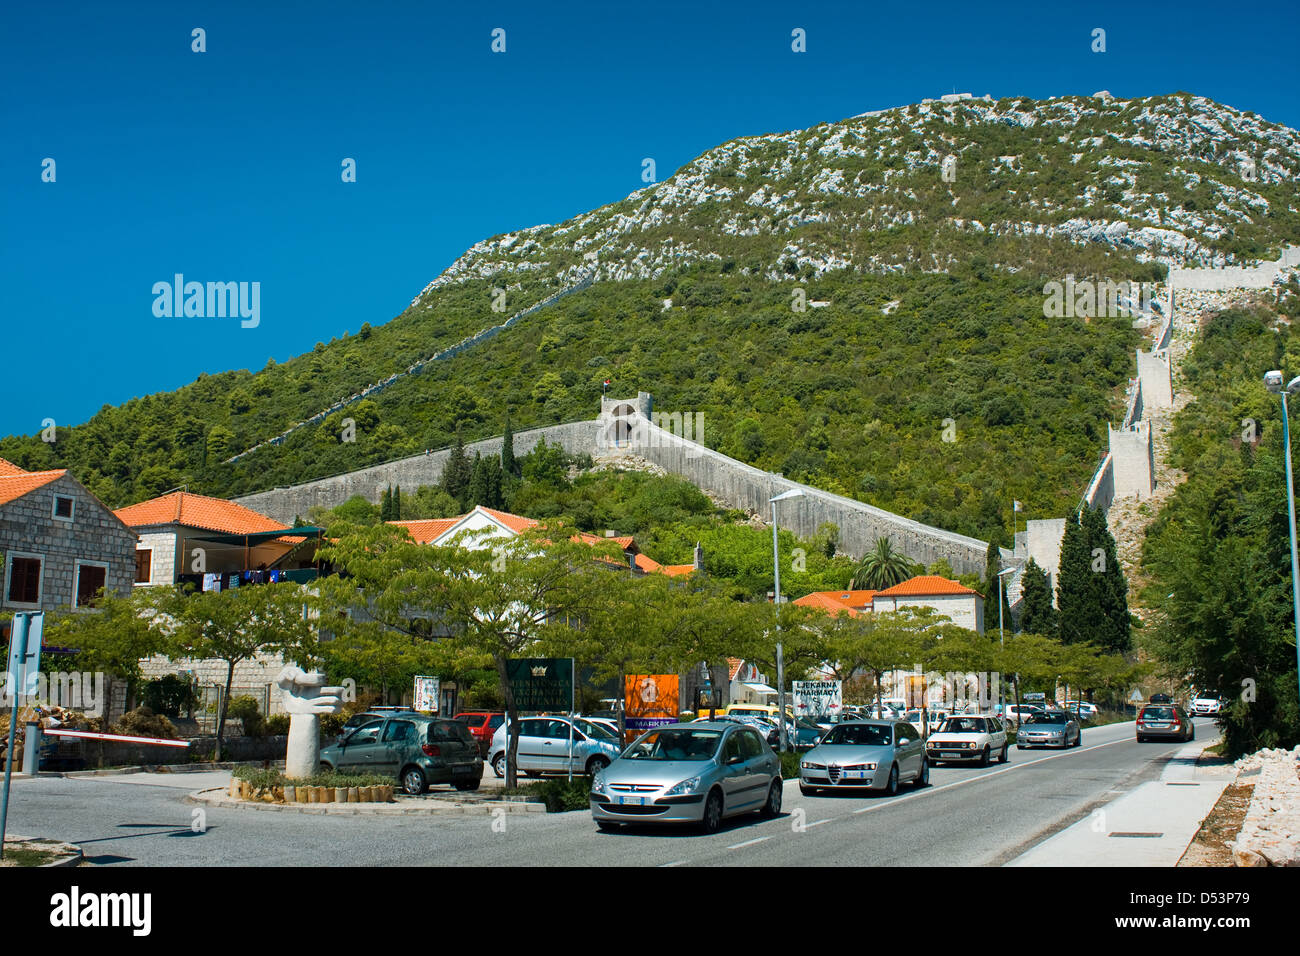 STON, Croatie - le 16 août : mur historique de Ston, le 16 août 2012. Ston est une petite ville située près de Dubrovnik en Croatie. Banque D'Images